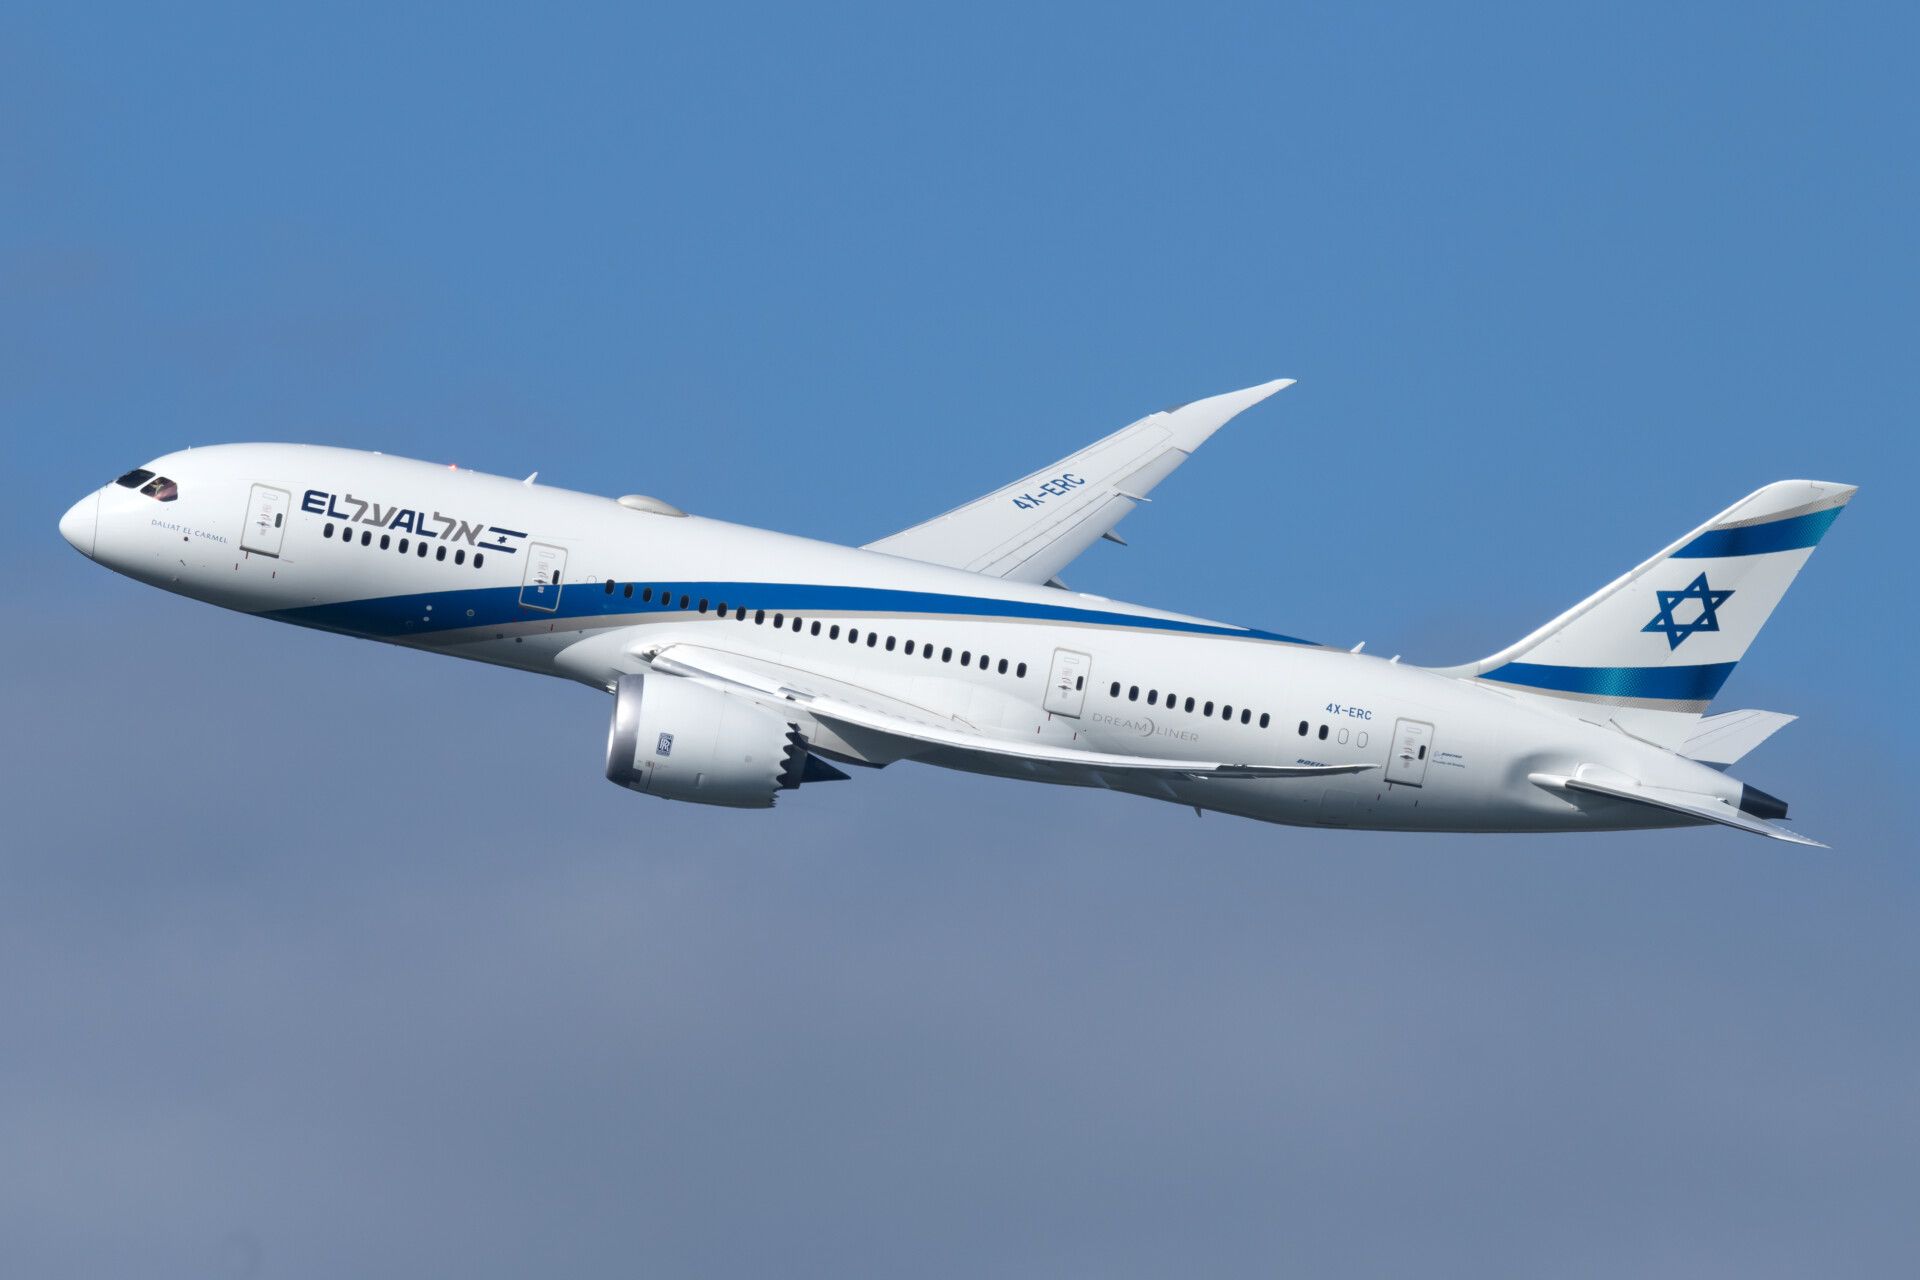 El Al Boeing 787-8 Dreamliner